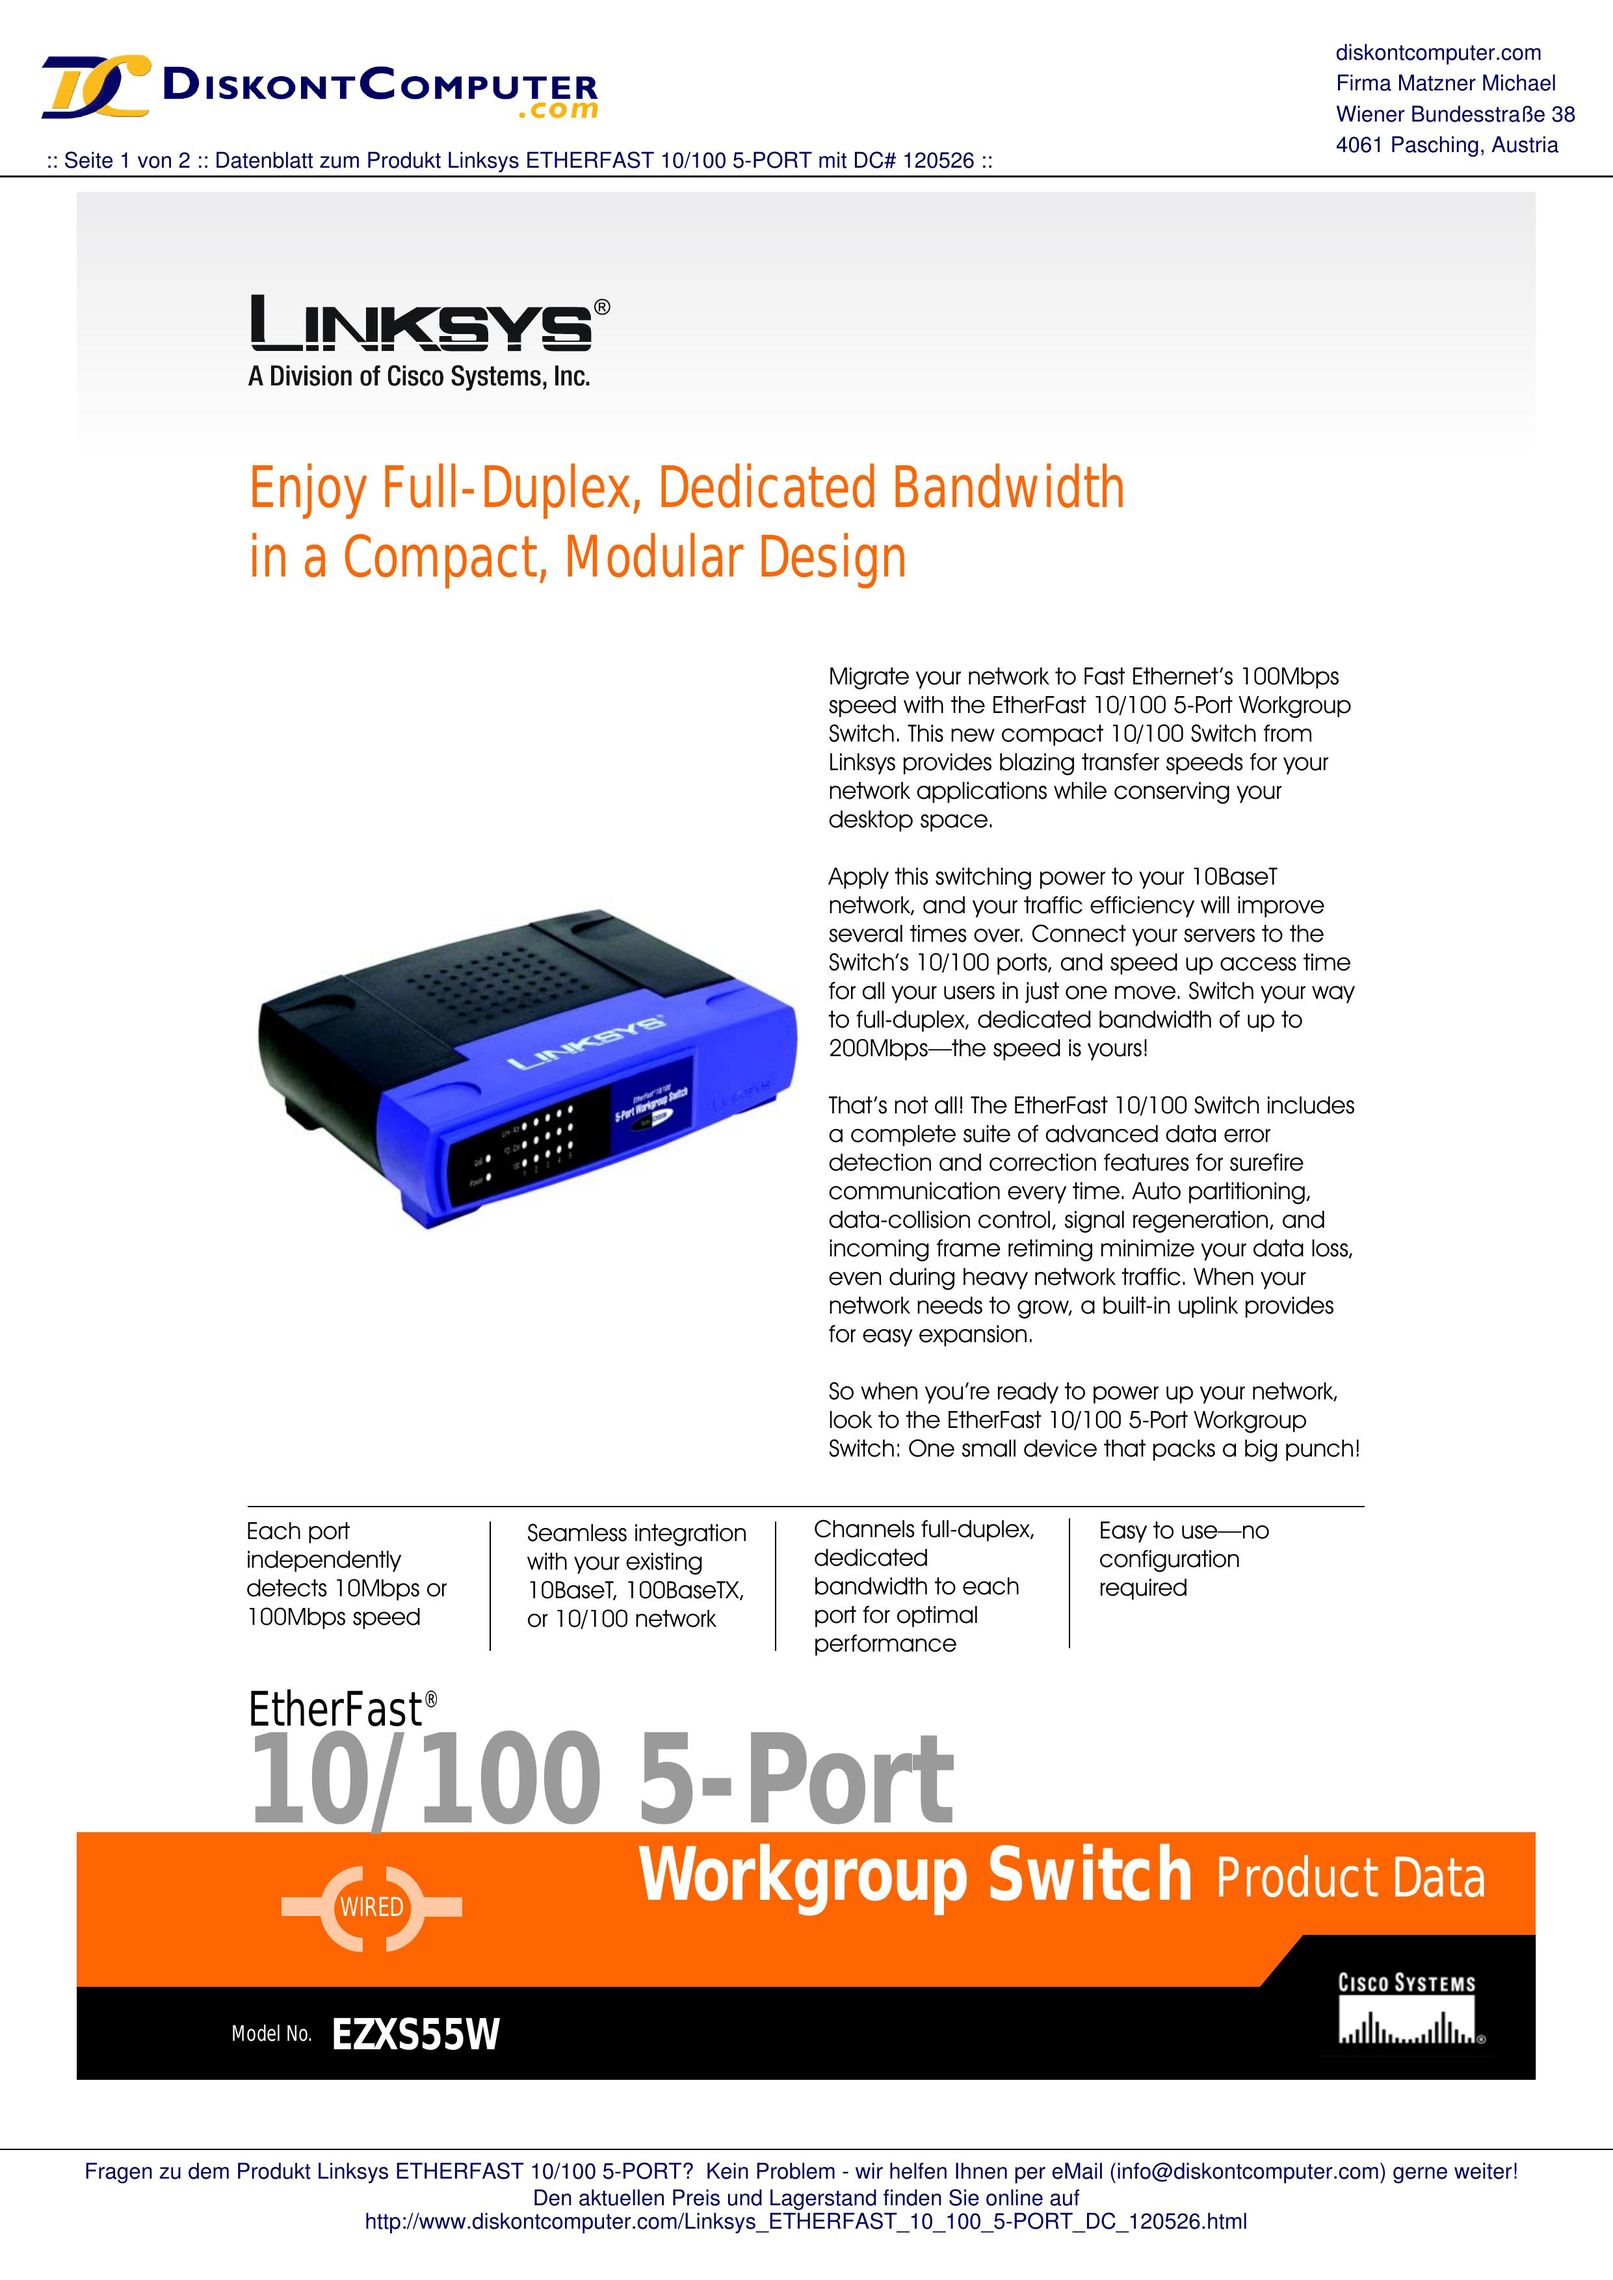 Linksys EZXS55W Switch User Manual